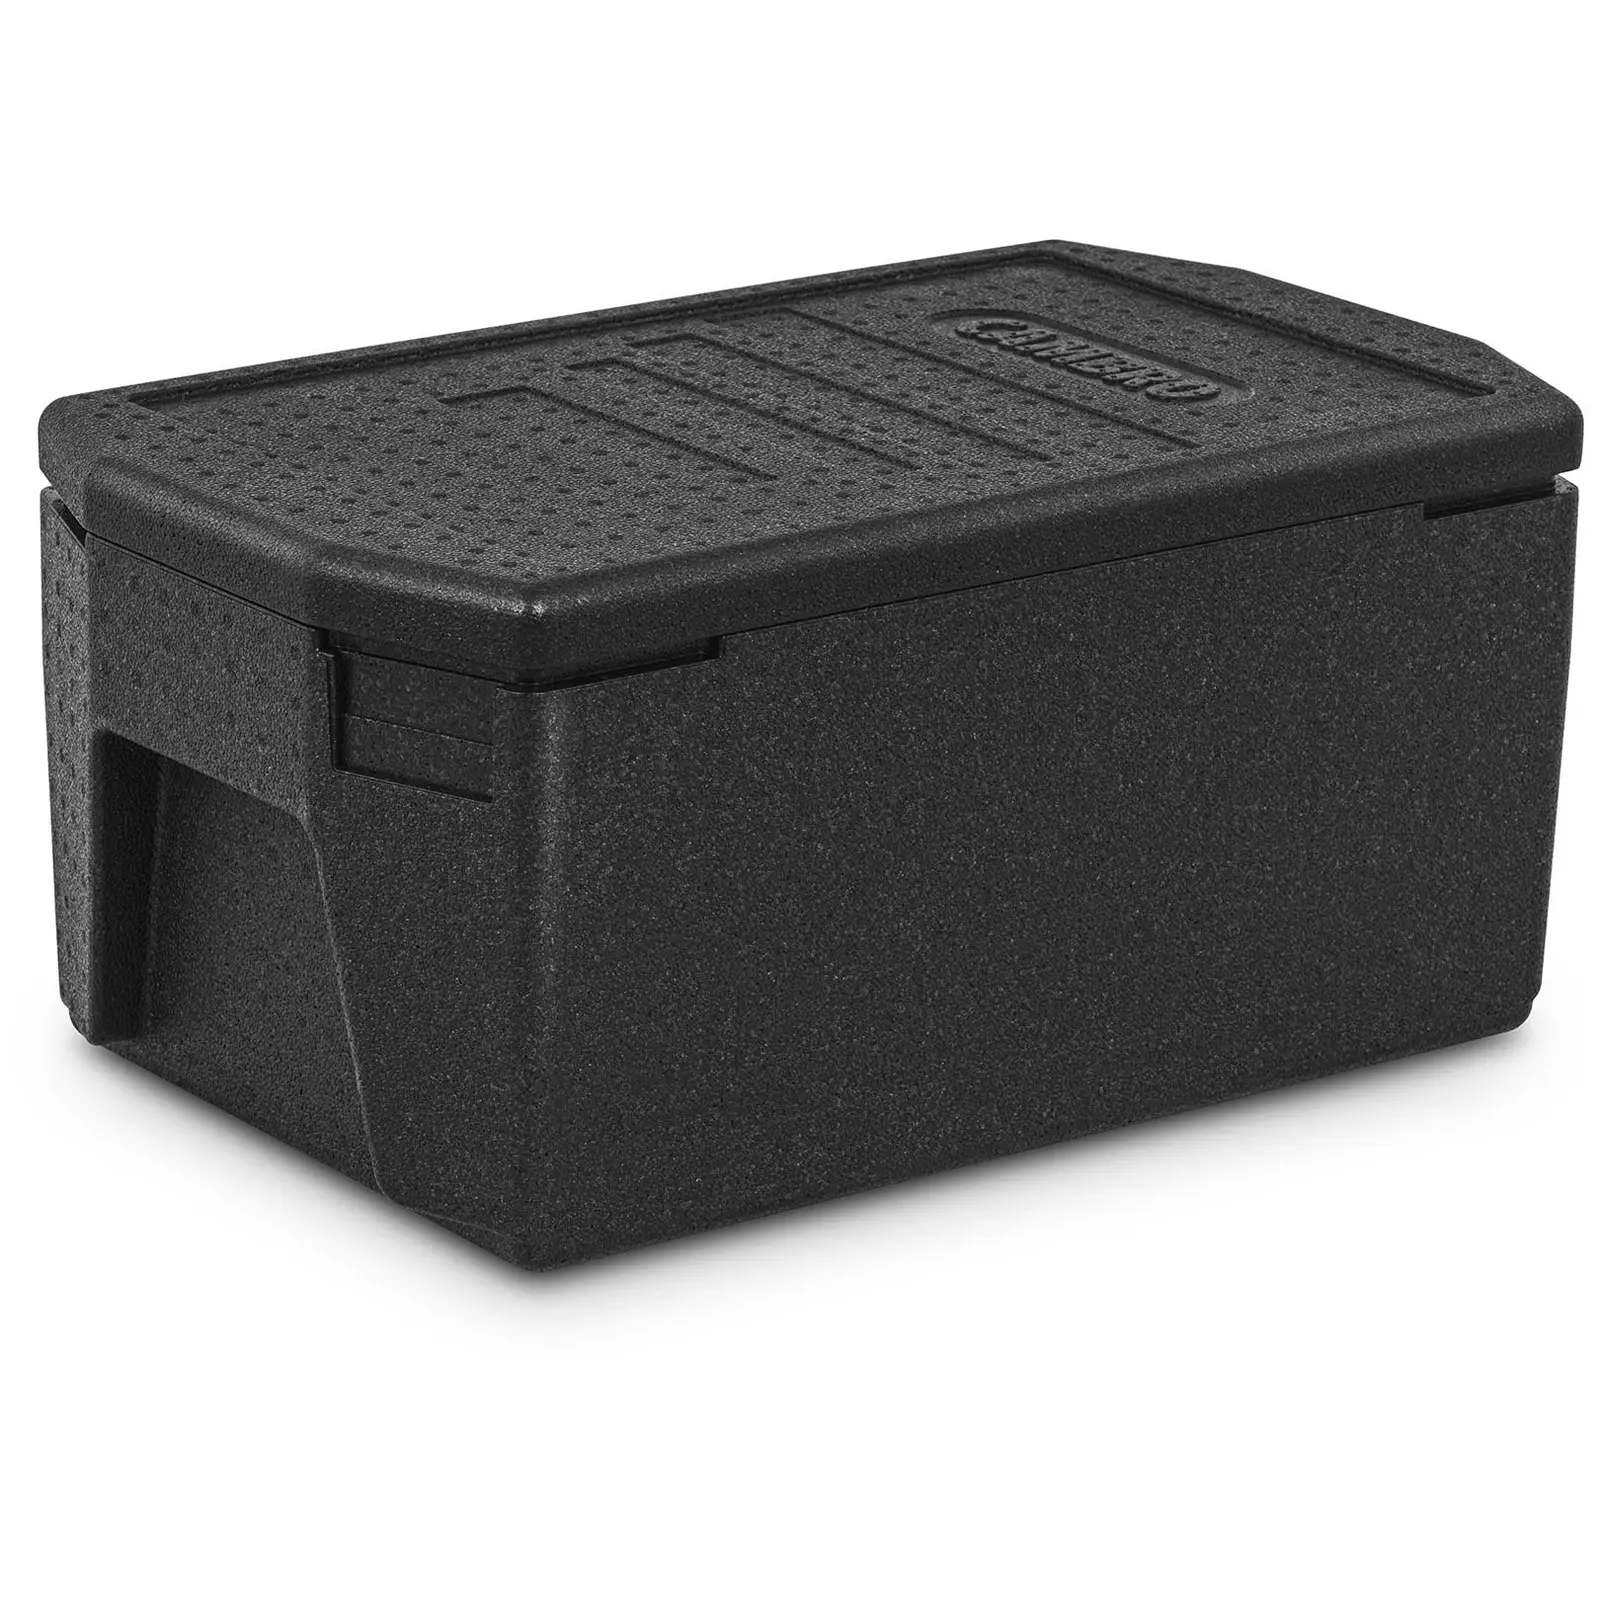 Box termico per alimenti da asporto - contenitori GN 1/1 (profondità 20 cm) - Maniglie XXL